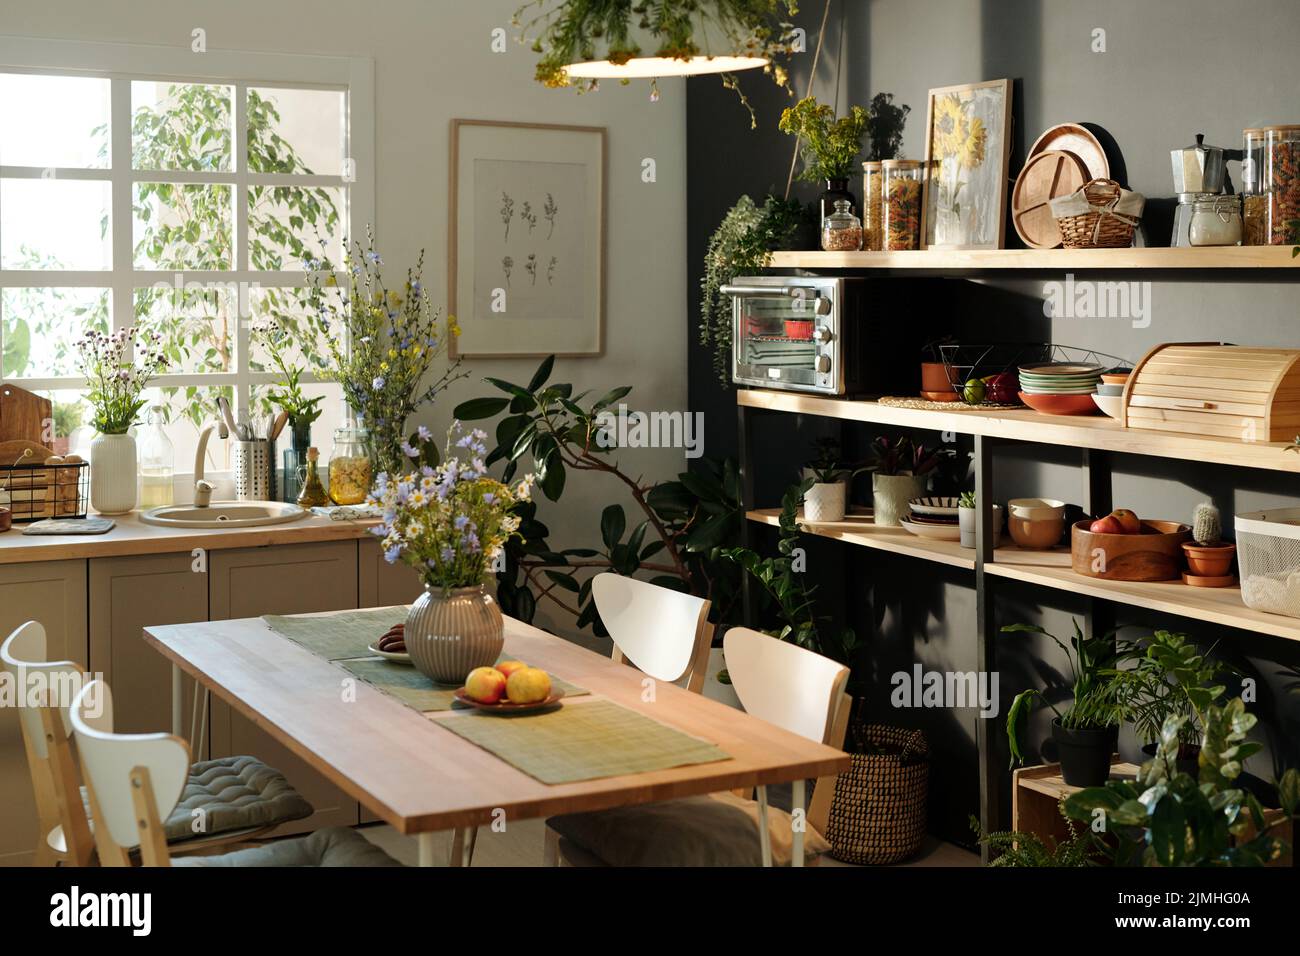 Interno di cucina accogliente con sedie che circondano tavolo con tovaglioli, fiori selvatici in vaso e mele su piatto in piedi dalla finestra Foto Stock